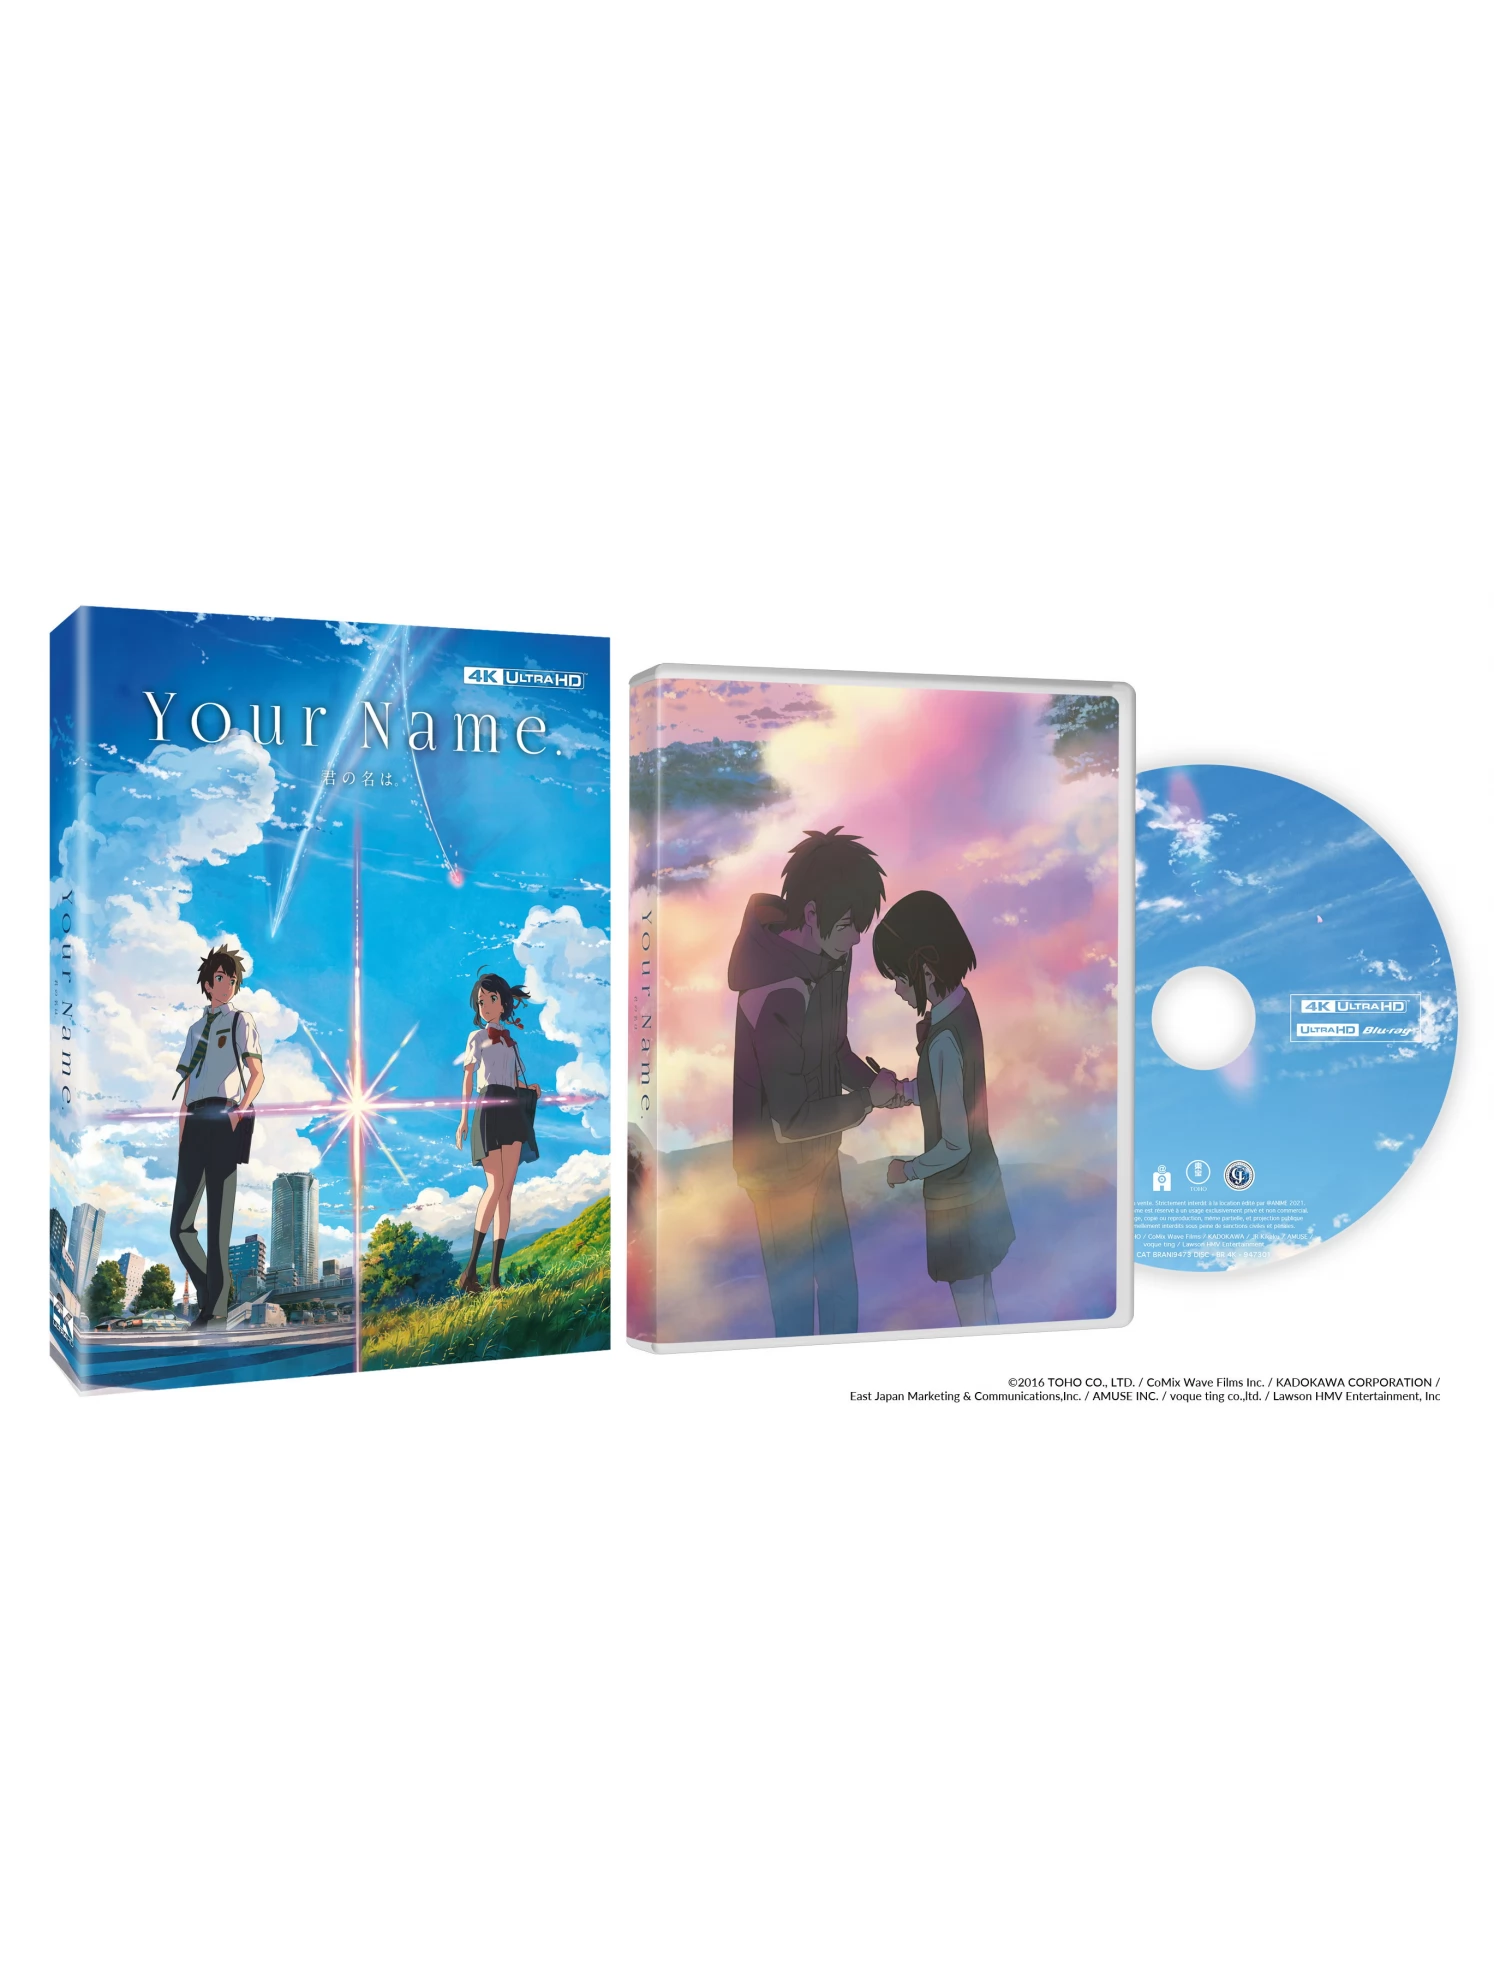 Le Voyage de Chihiro en Blu Ray : Le Voyage de Chihiro - AlloCiné